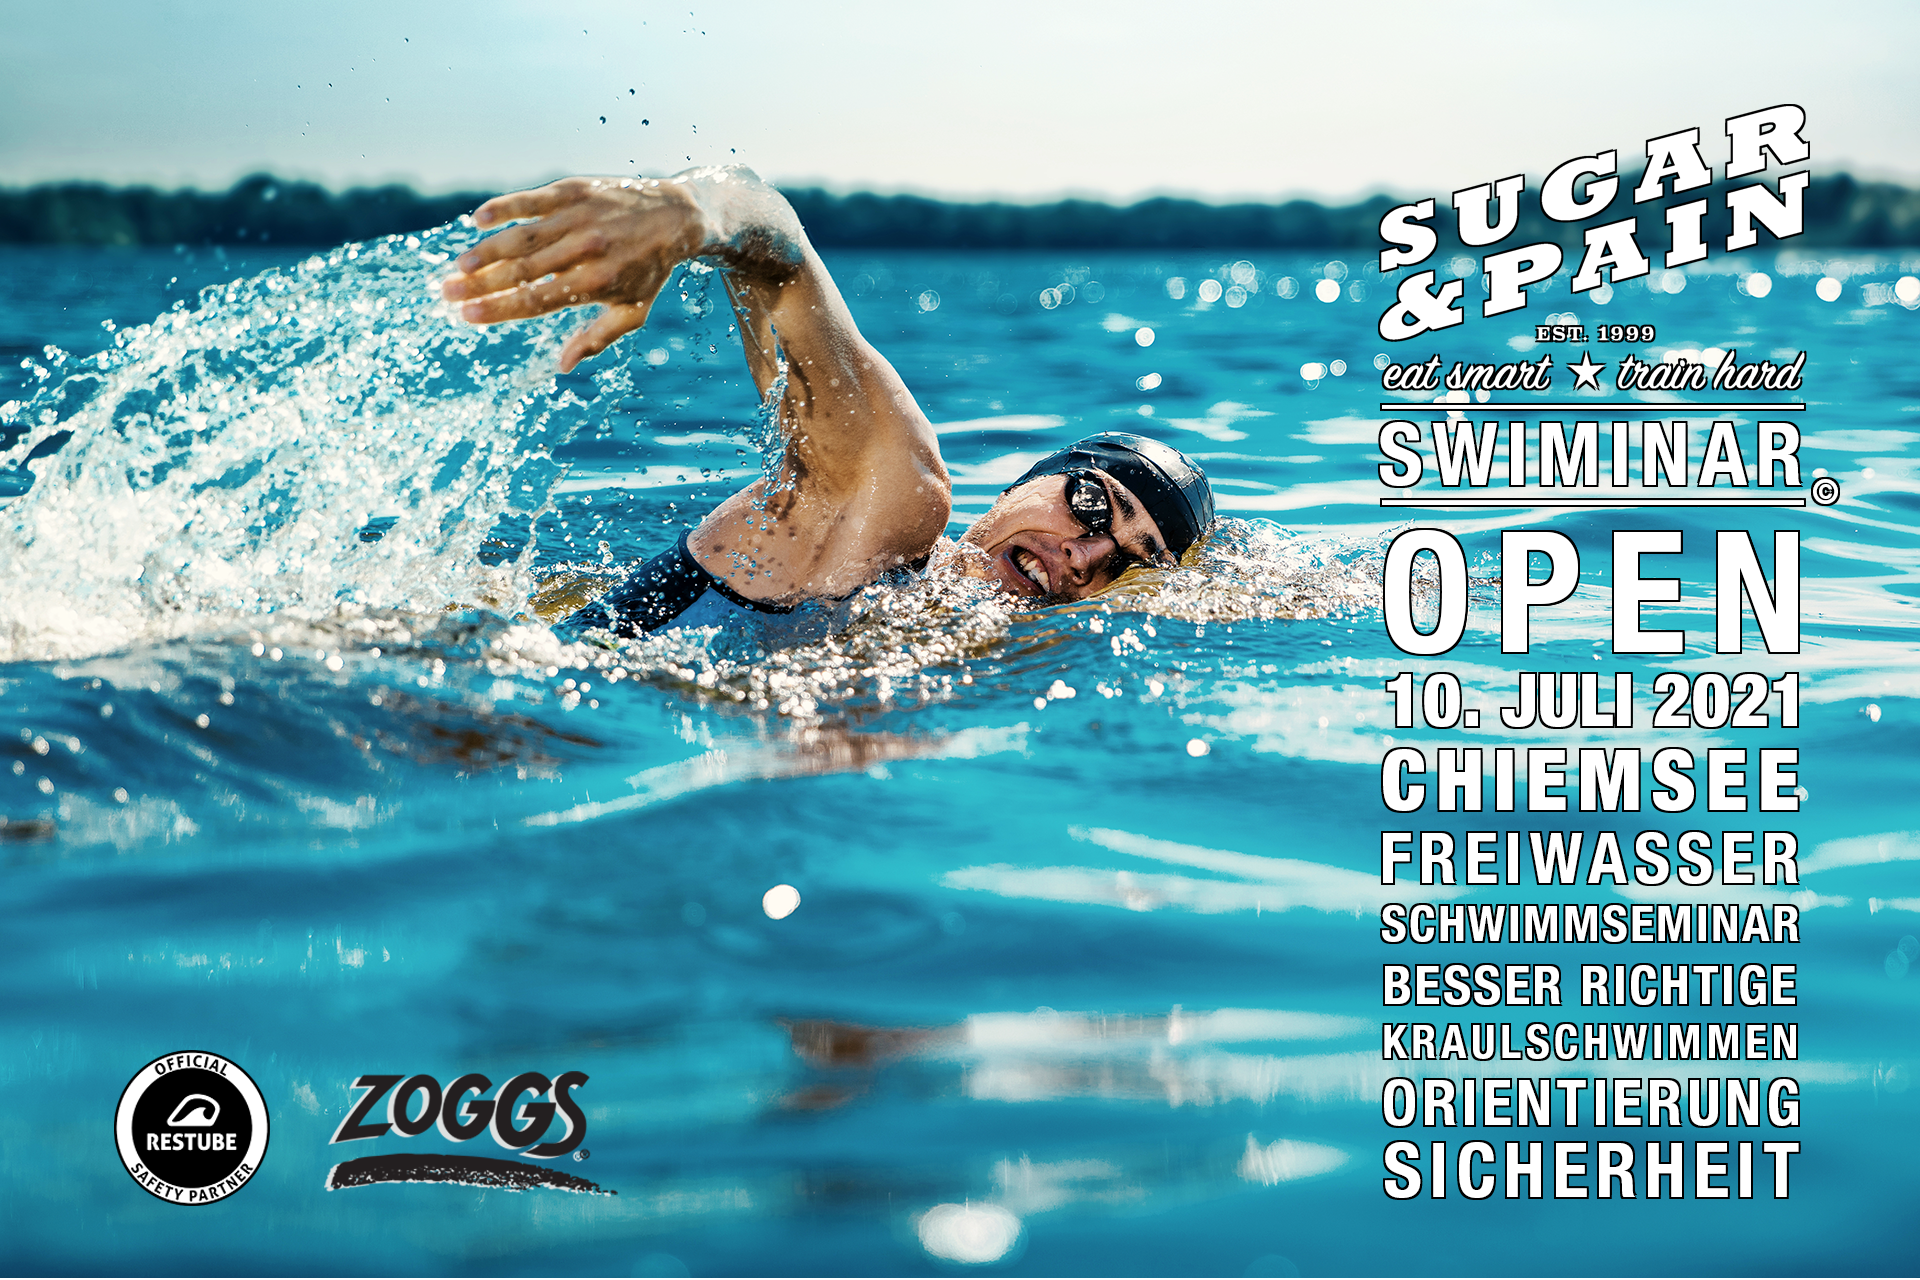 SWIMINAR #OPEN Chiemsee 01/21 Seminar besser im Freiwasser schwimmen / Titel © Stefan Drexl / master1305 / AdobeStock